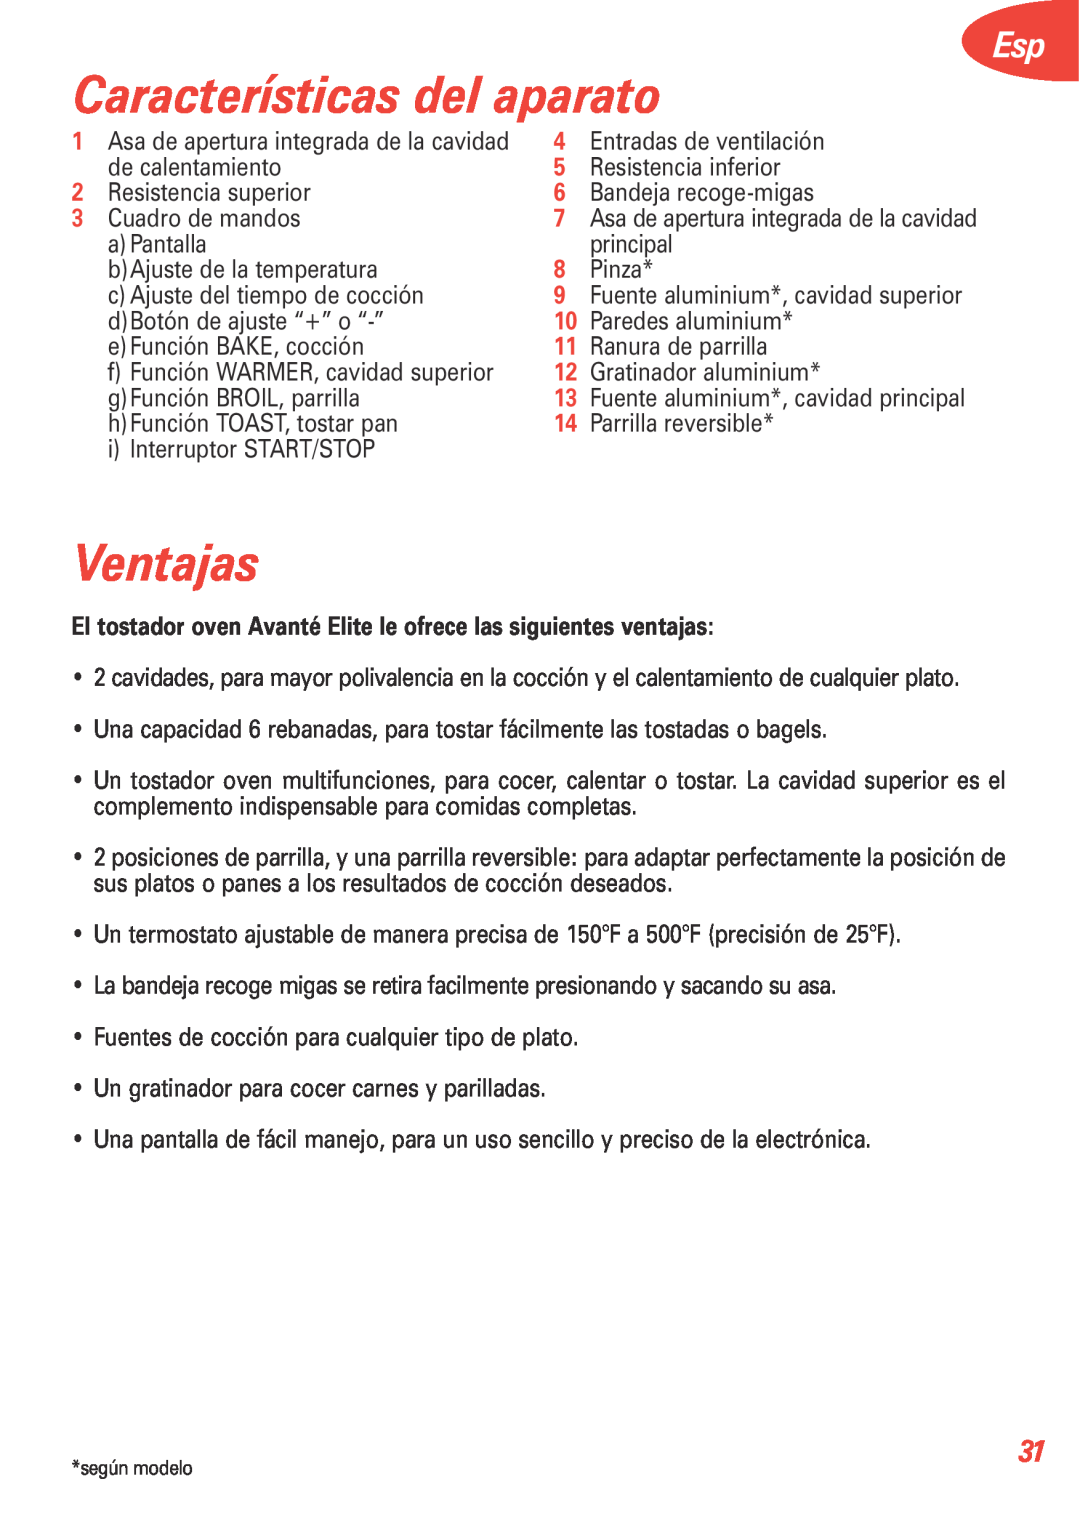 T-Fal 5252 manual Características del aparato, Ventajas 